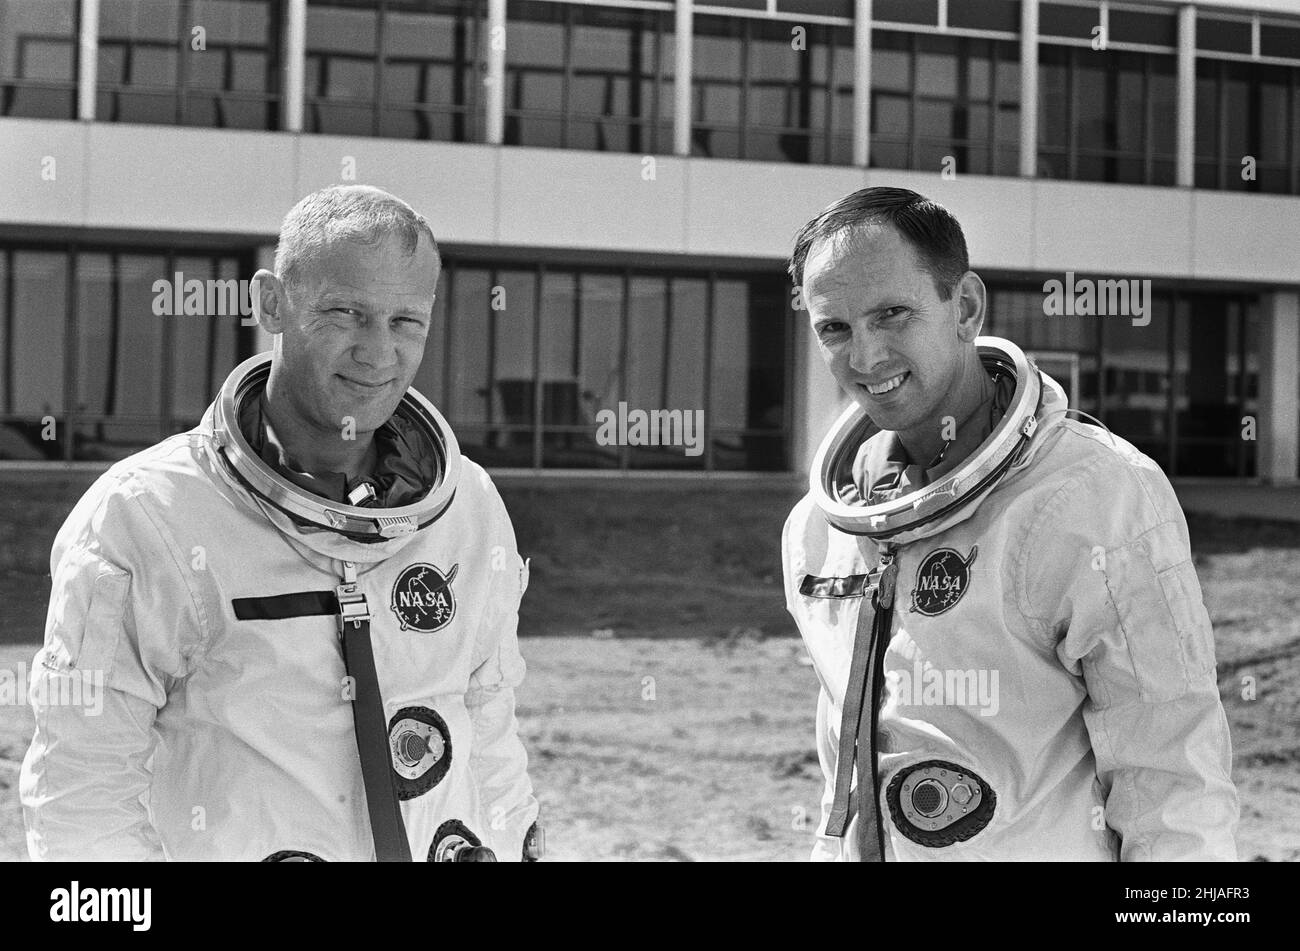 Die Astronauten Edwin Eugene Buzz Aldrin (links) und Theodore Cordy Ted Freeman (rechts) sind hier im Johnson Space Center in Houston, Texas, zu sehen. Wo sie für das Gemini-Weltraumprogramm trainiert haben. 30th. Oktober 1964Astronaut Ted Freeman starb leider am Tag nach der Aufnahme dieses Bildes bei einem Flugzeugunglück Stockfoto